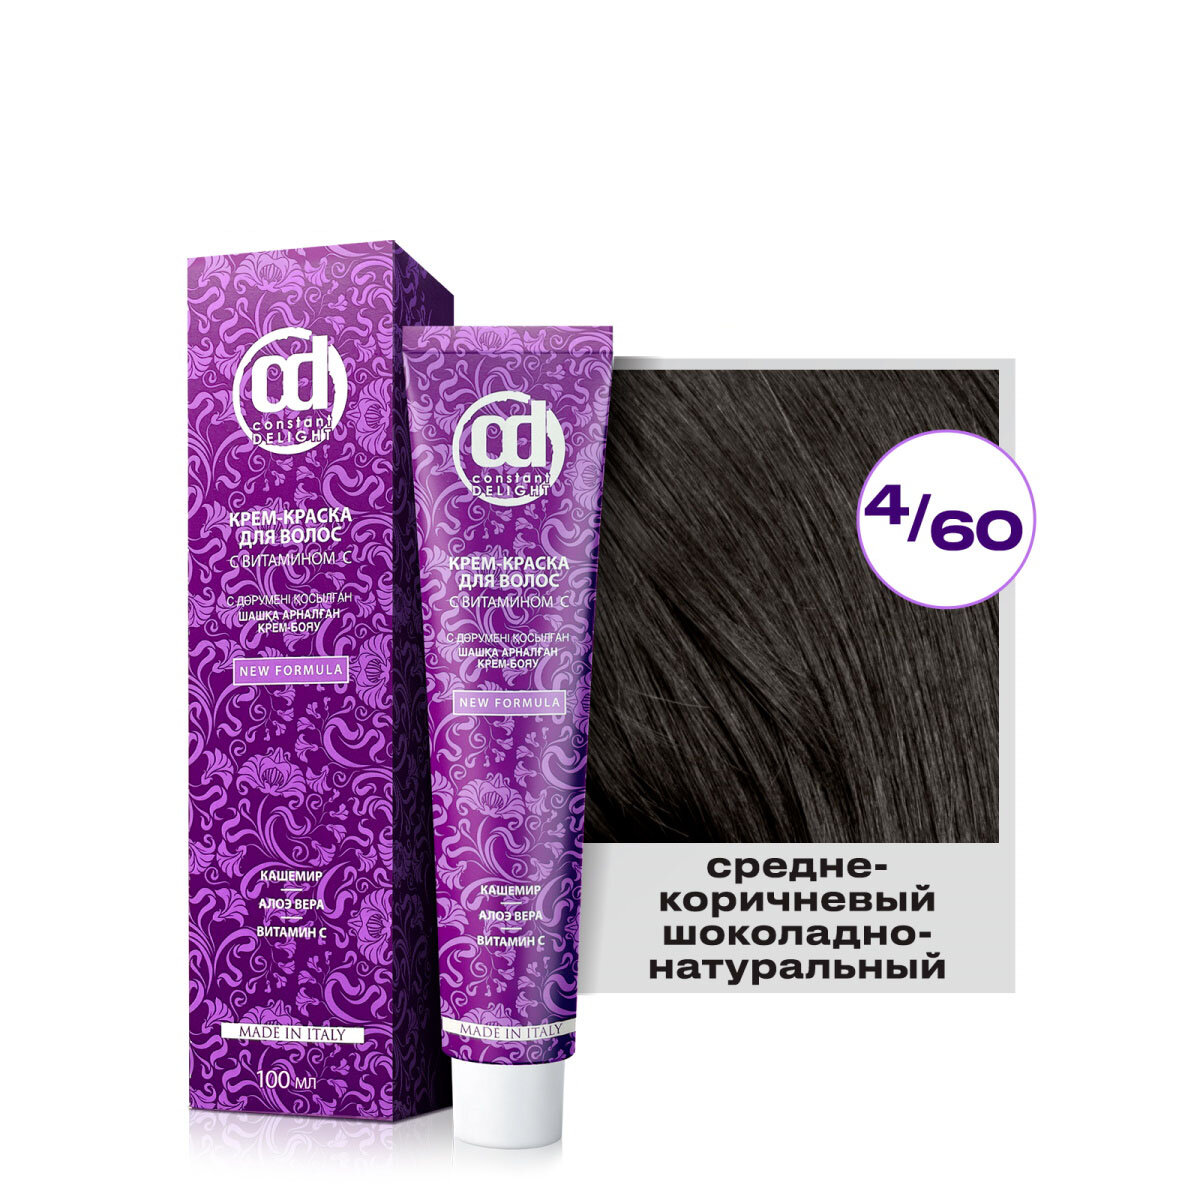 Крем-краска для окрашивания волос CONSTANT DELIGHT 4/60 средне-коричневый шоколадно-натуральный 100 мл